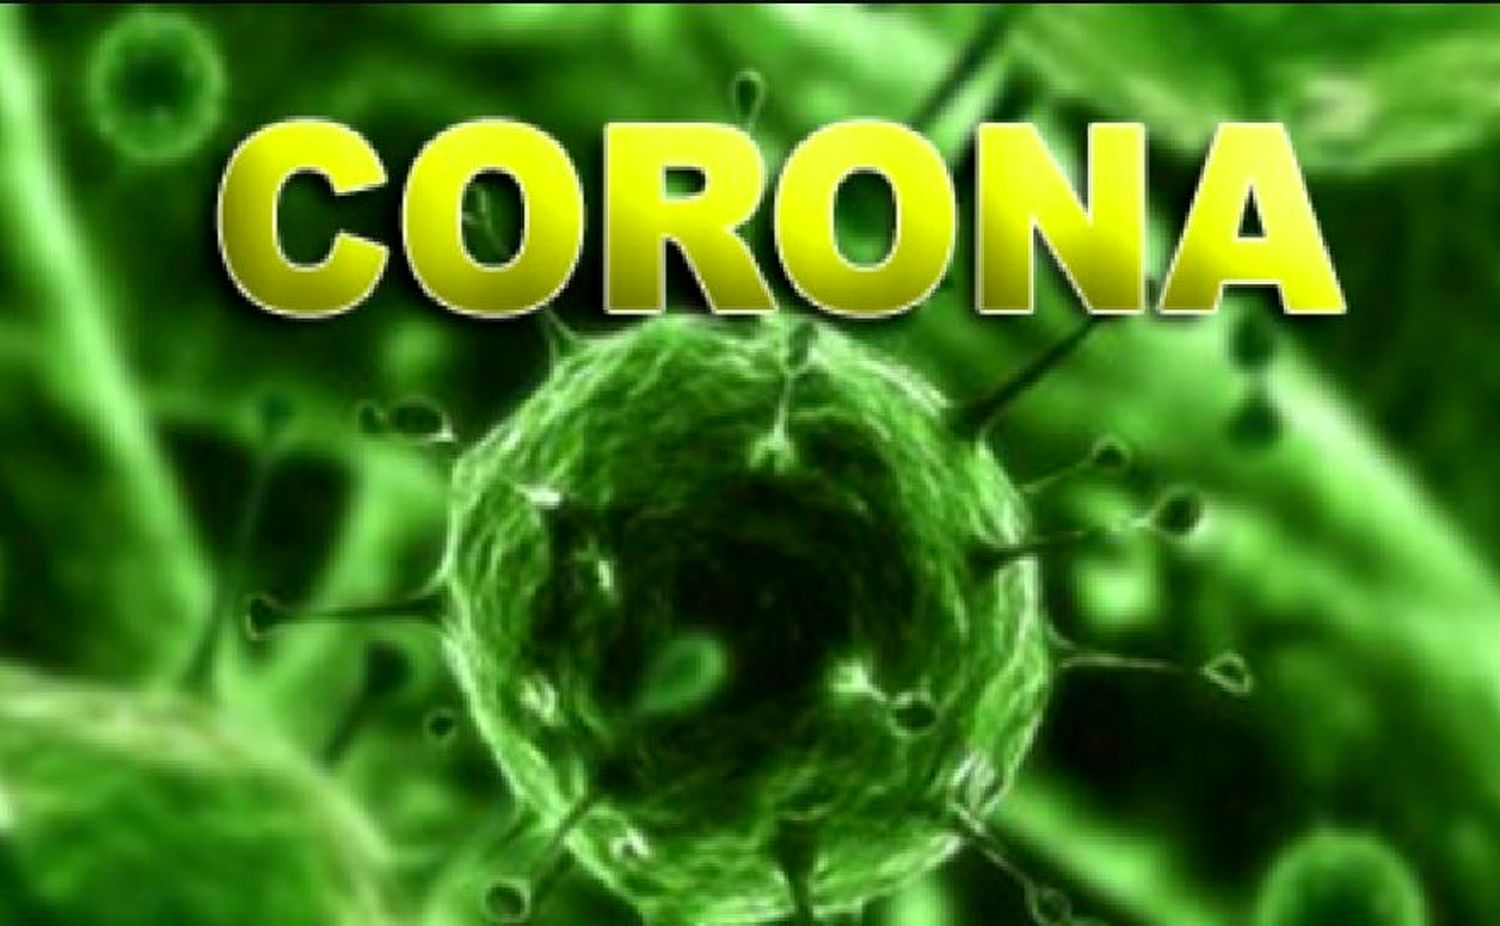 هرآنچه باید در رابطه با آمادگی برای شیوع بیماری کرونا بدانیم کرونا یک بیماری ویروسی جدید حاصل از ویروس کووید 19 است که در حال حاضر همه جهان را درگیر کرده است. کرونا به شدت مسری است و هر فرد بیمار می تواند به راحتی 4 فرد دیگر را مبتلا کند.